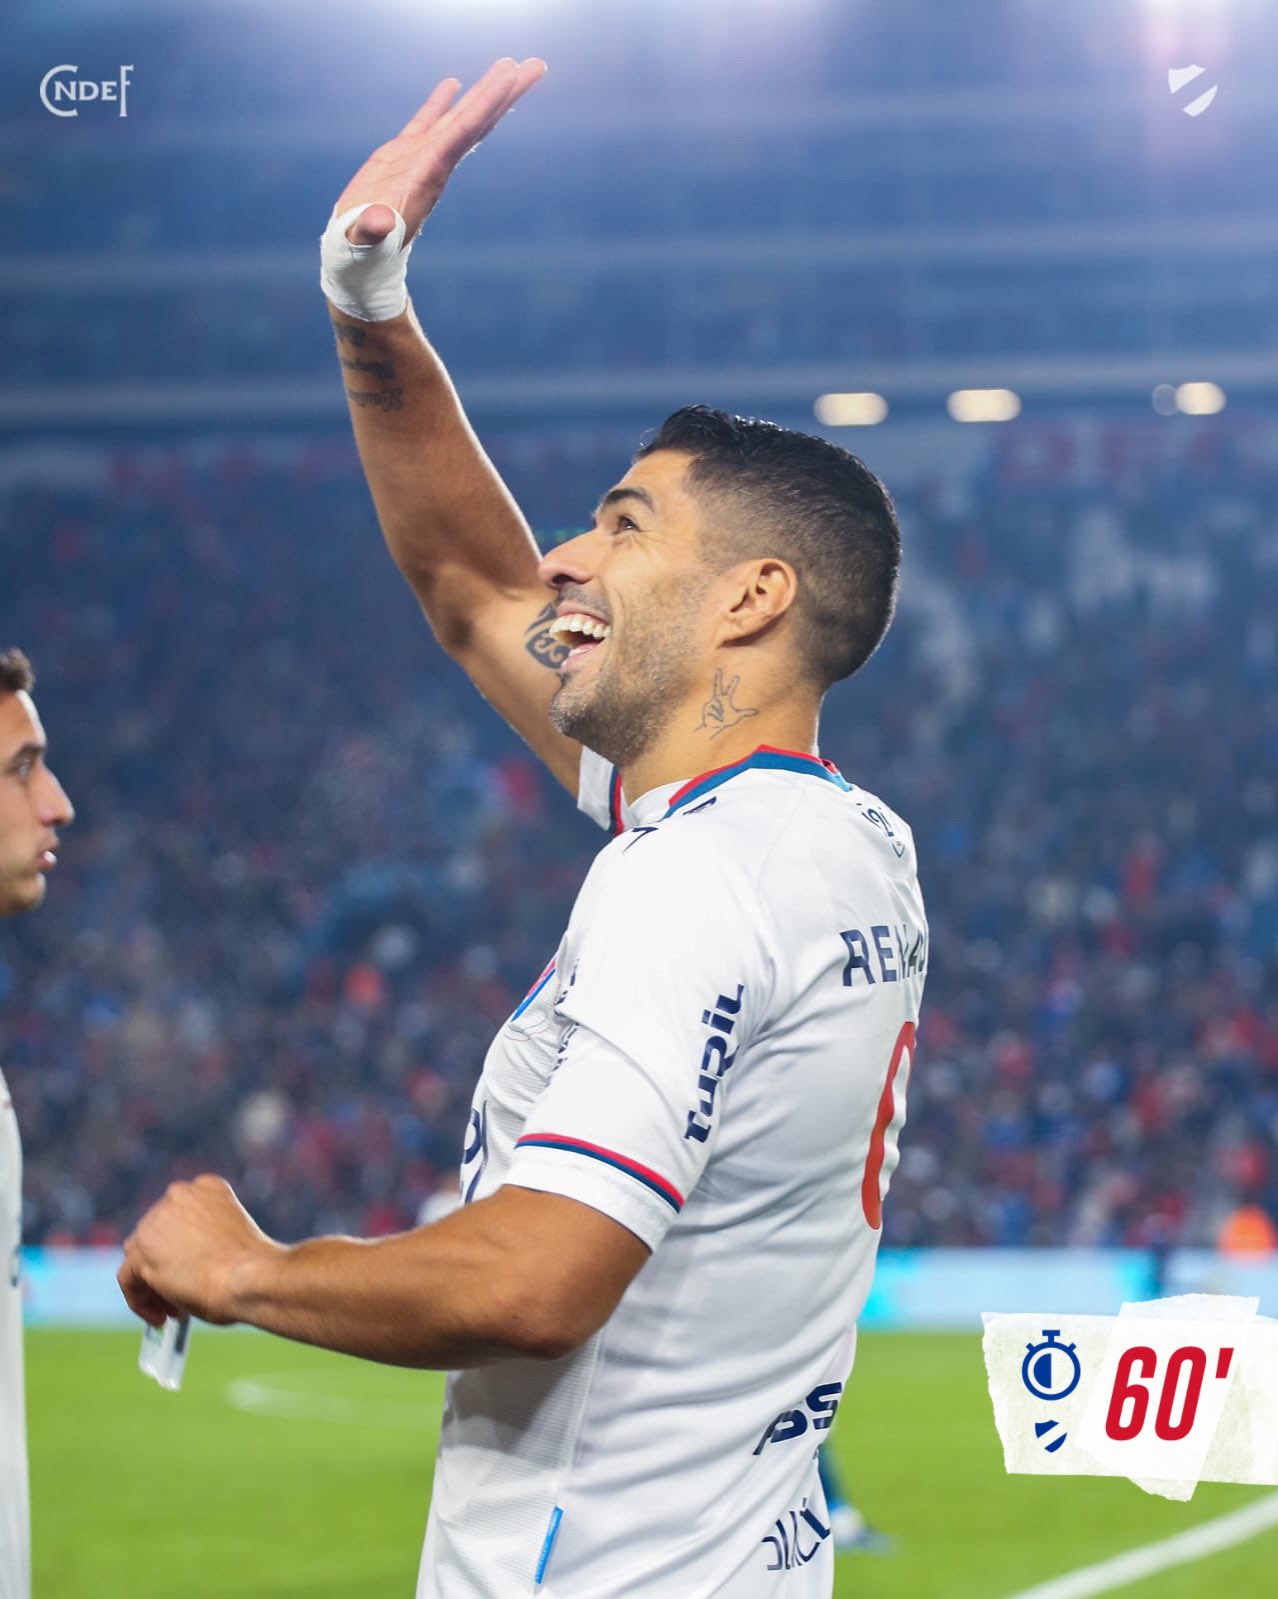 Llegó el momento, gol de Suárez, Nacional le ganó 3 a 0 a Rentistas